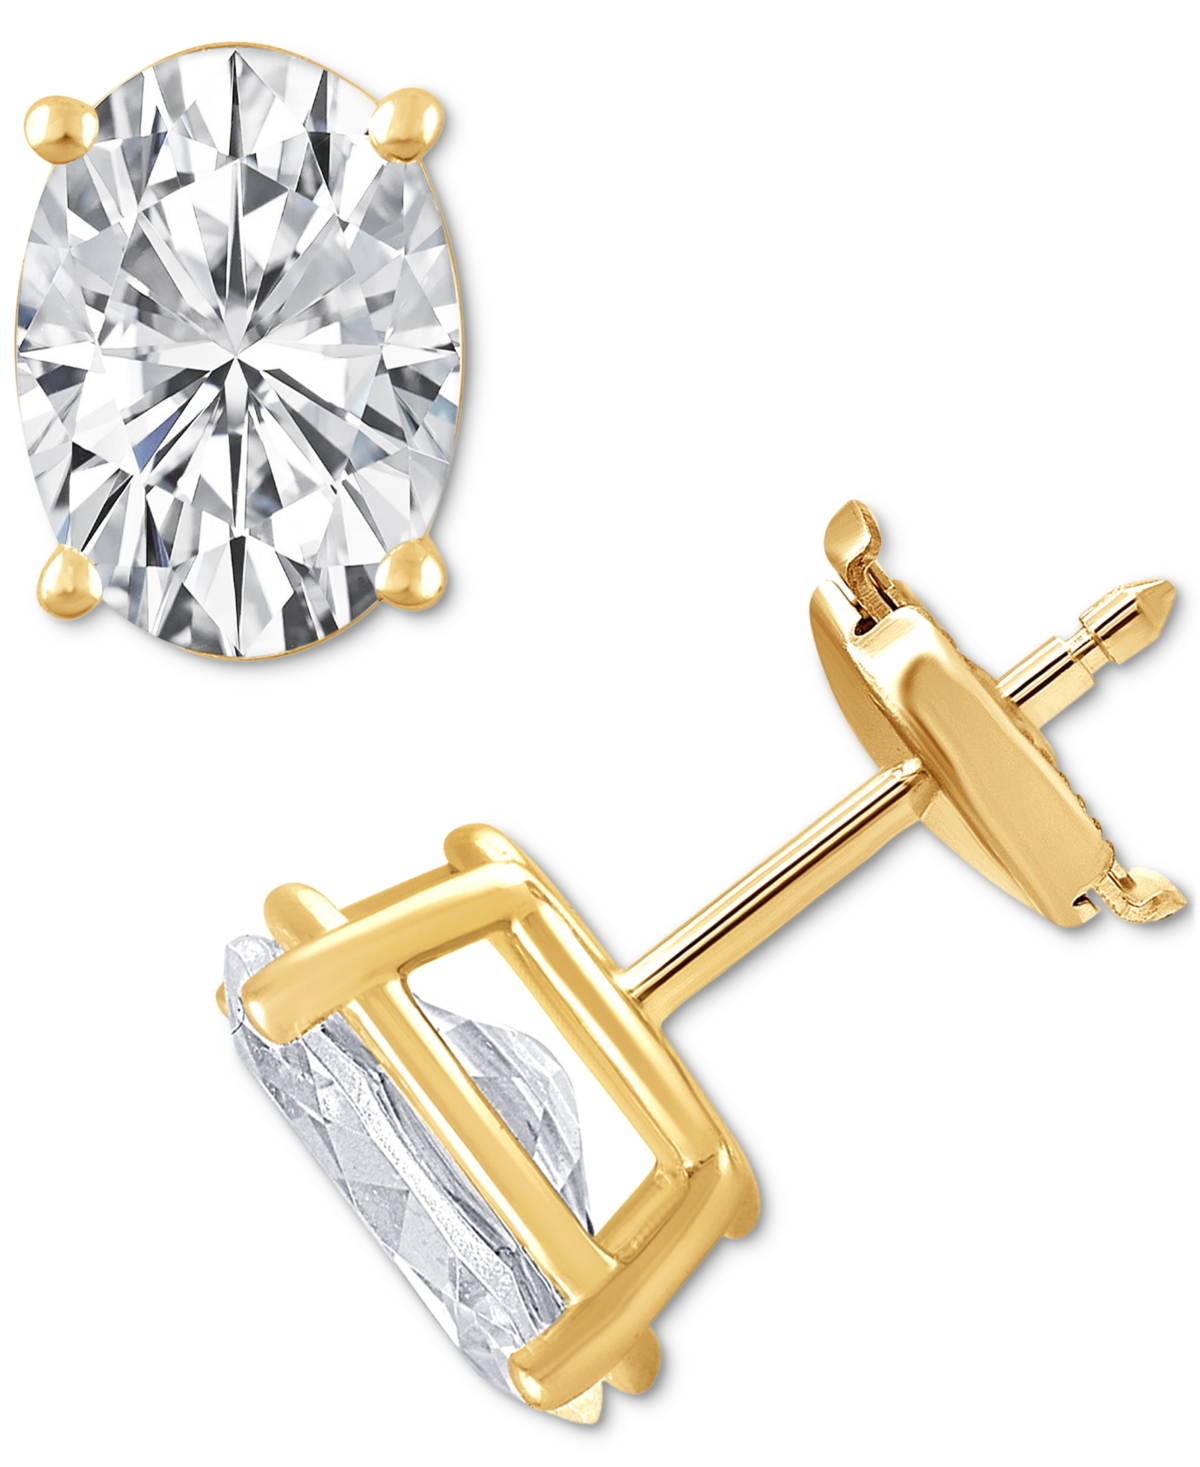 Certified Lab Grown Diamond Oval Stud Earrings (6 ct. t.w.) in 14k Gold - Yellow Gold